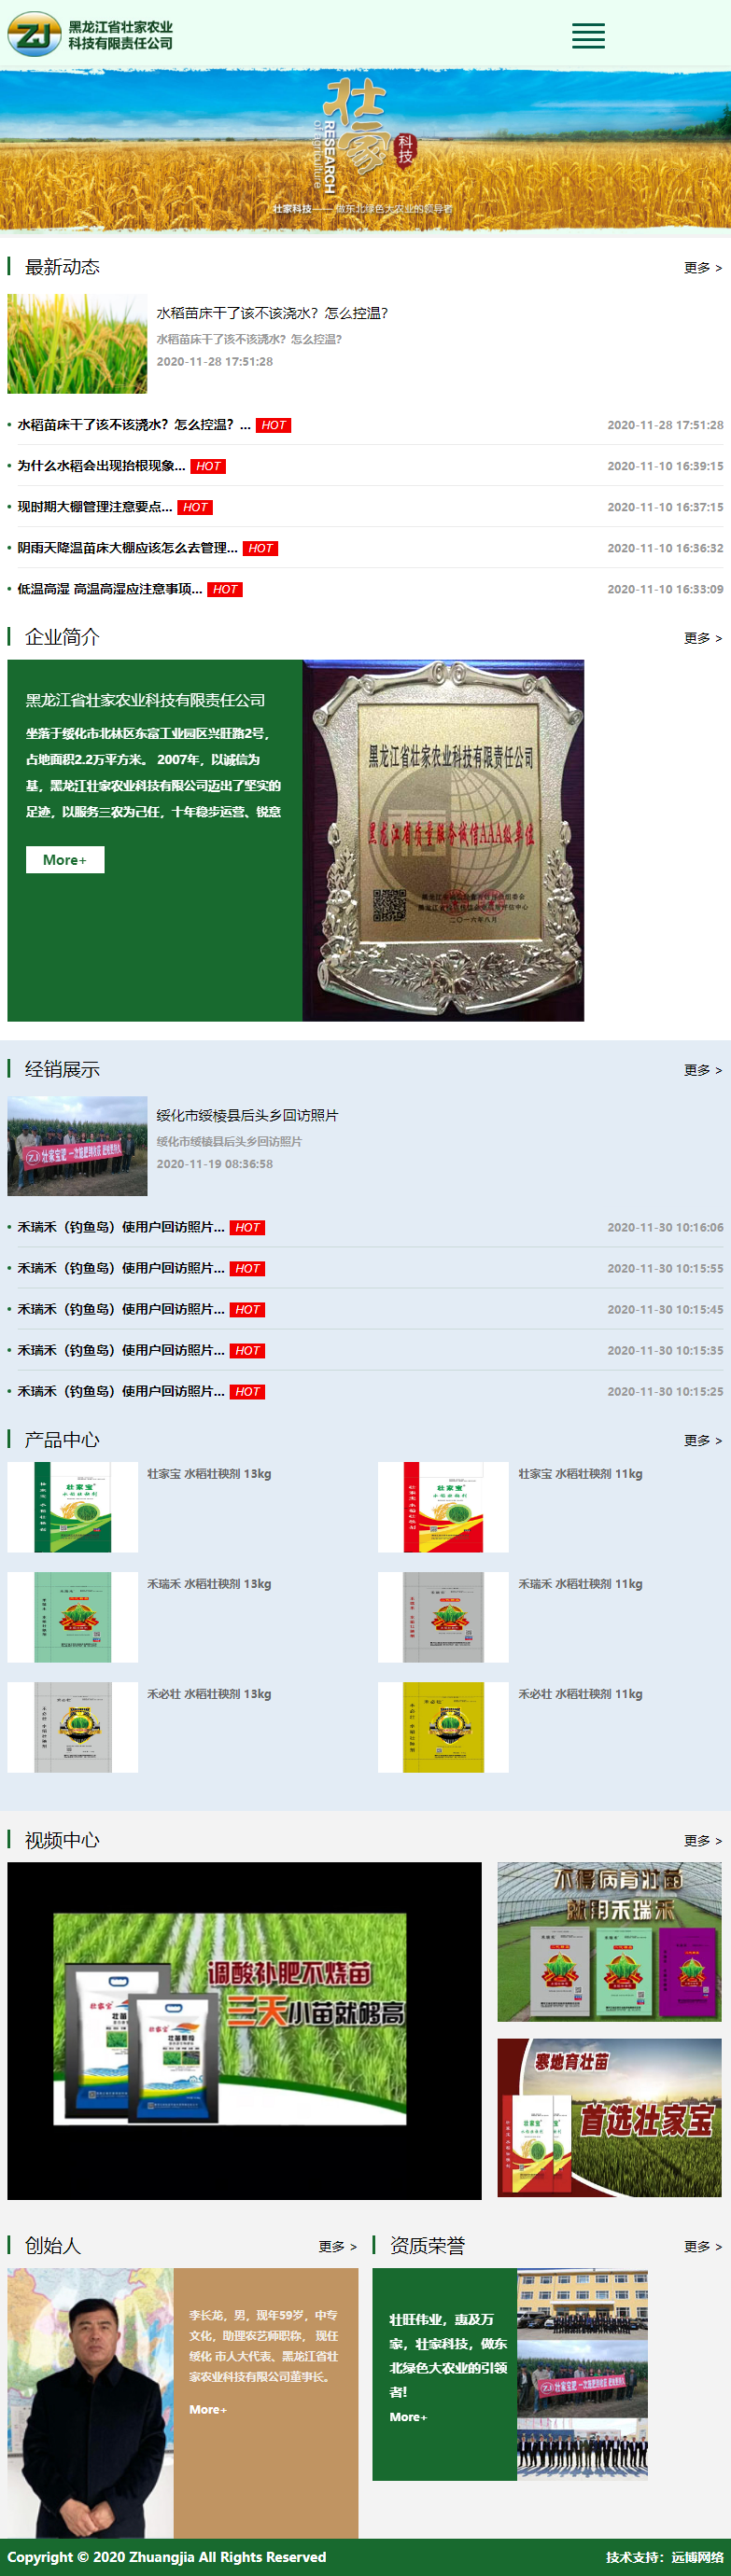 黑龙江省壮家农业科技有限责任公司网站案例